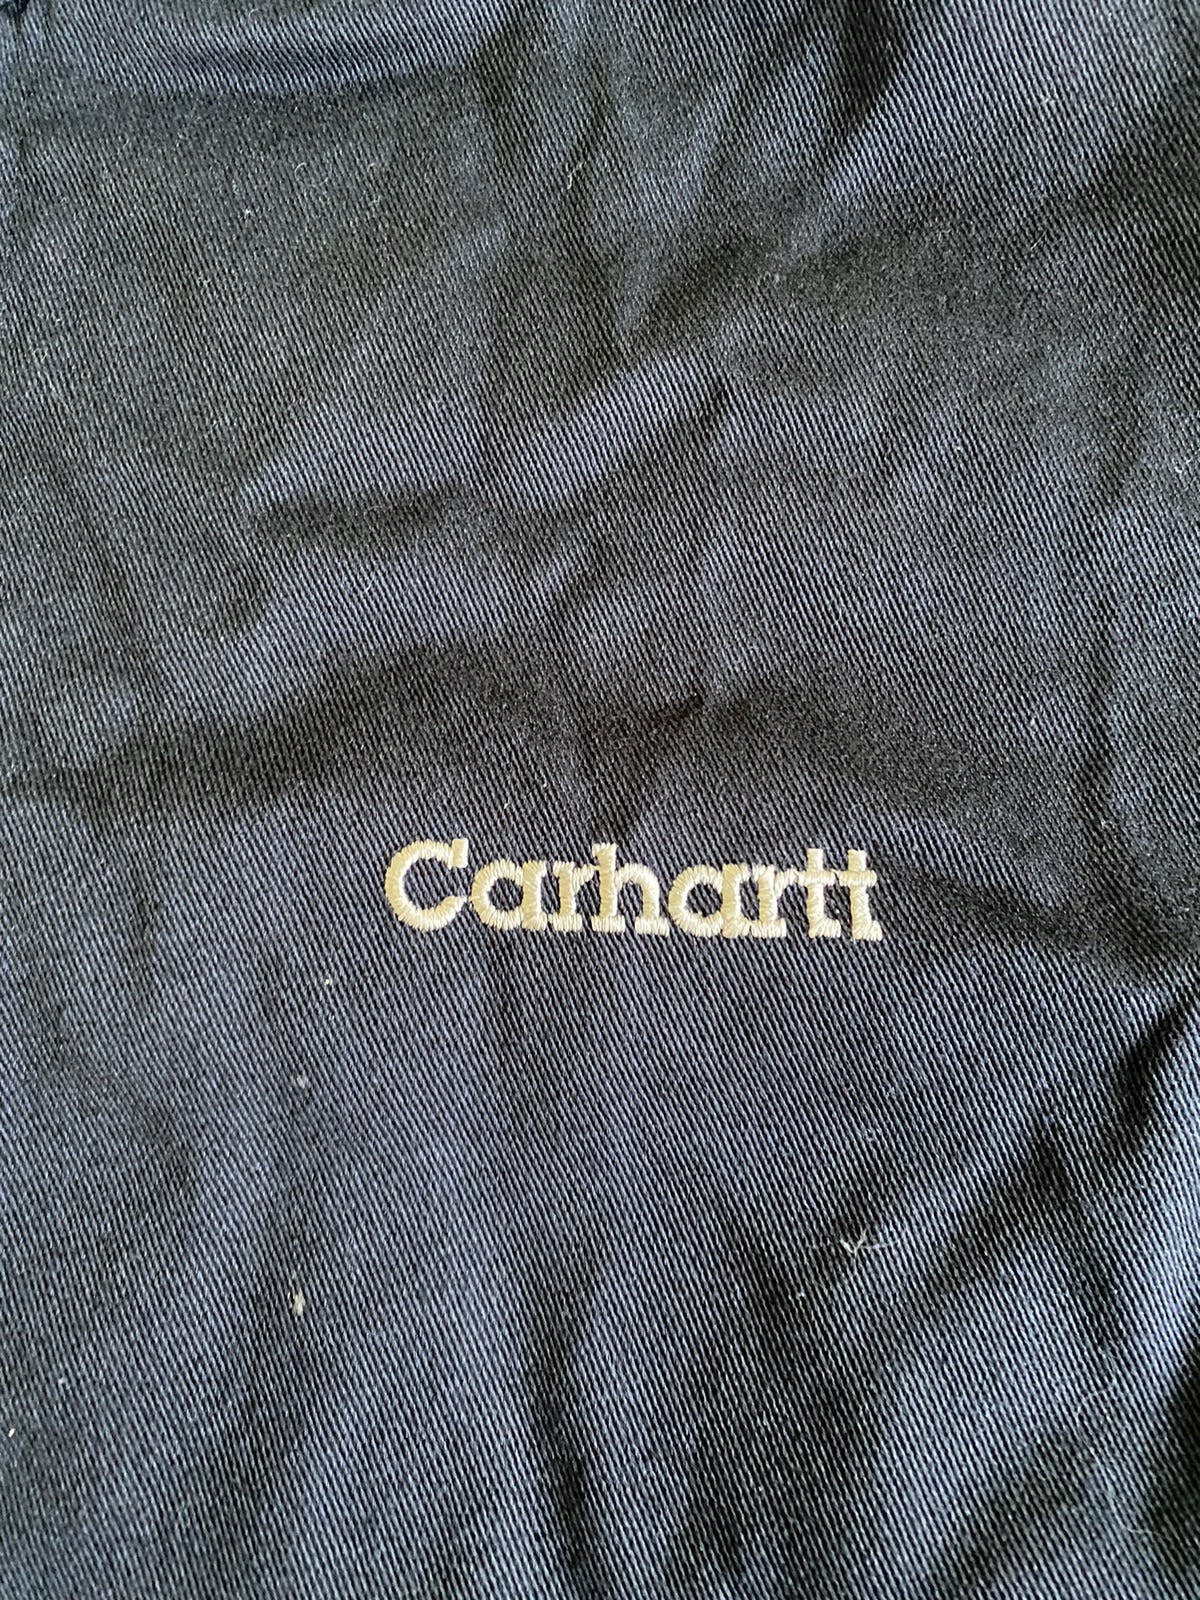 Carhartt Workers zip up black Jacket - 4